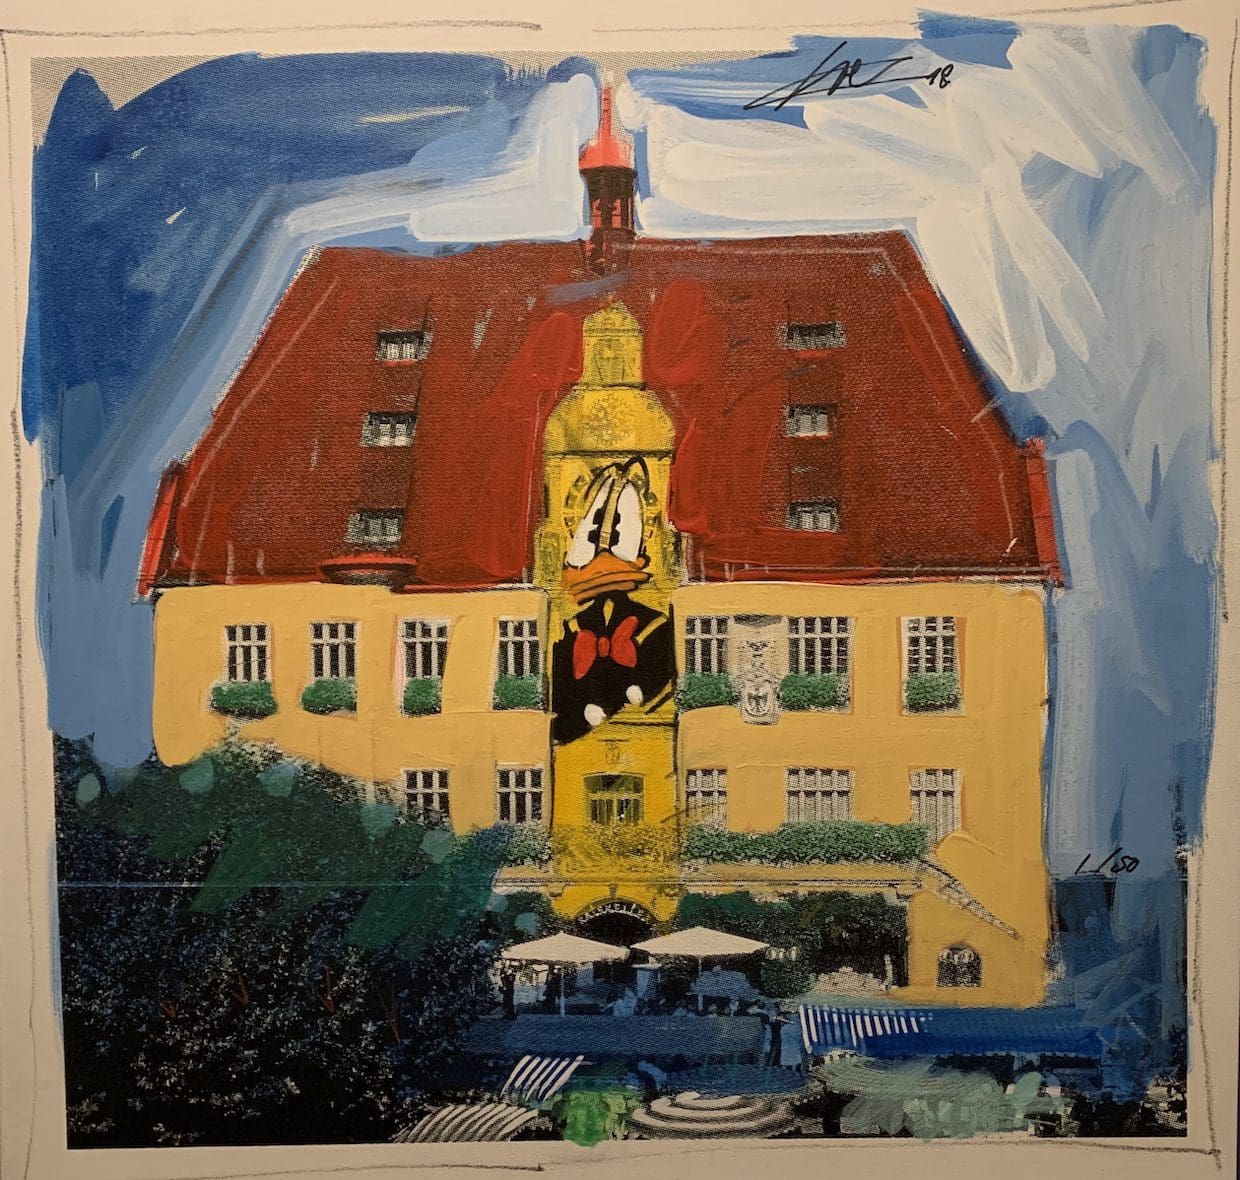 Prefeitura de Heilbronn em acrílico por Wolfgang Loesche